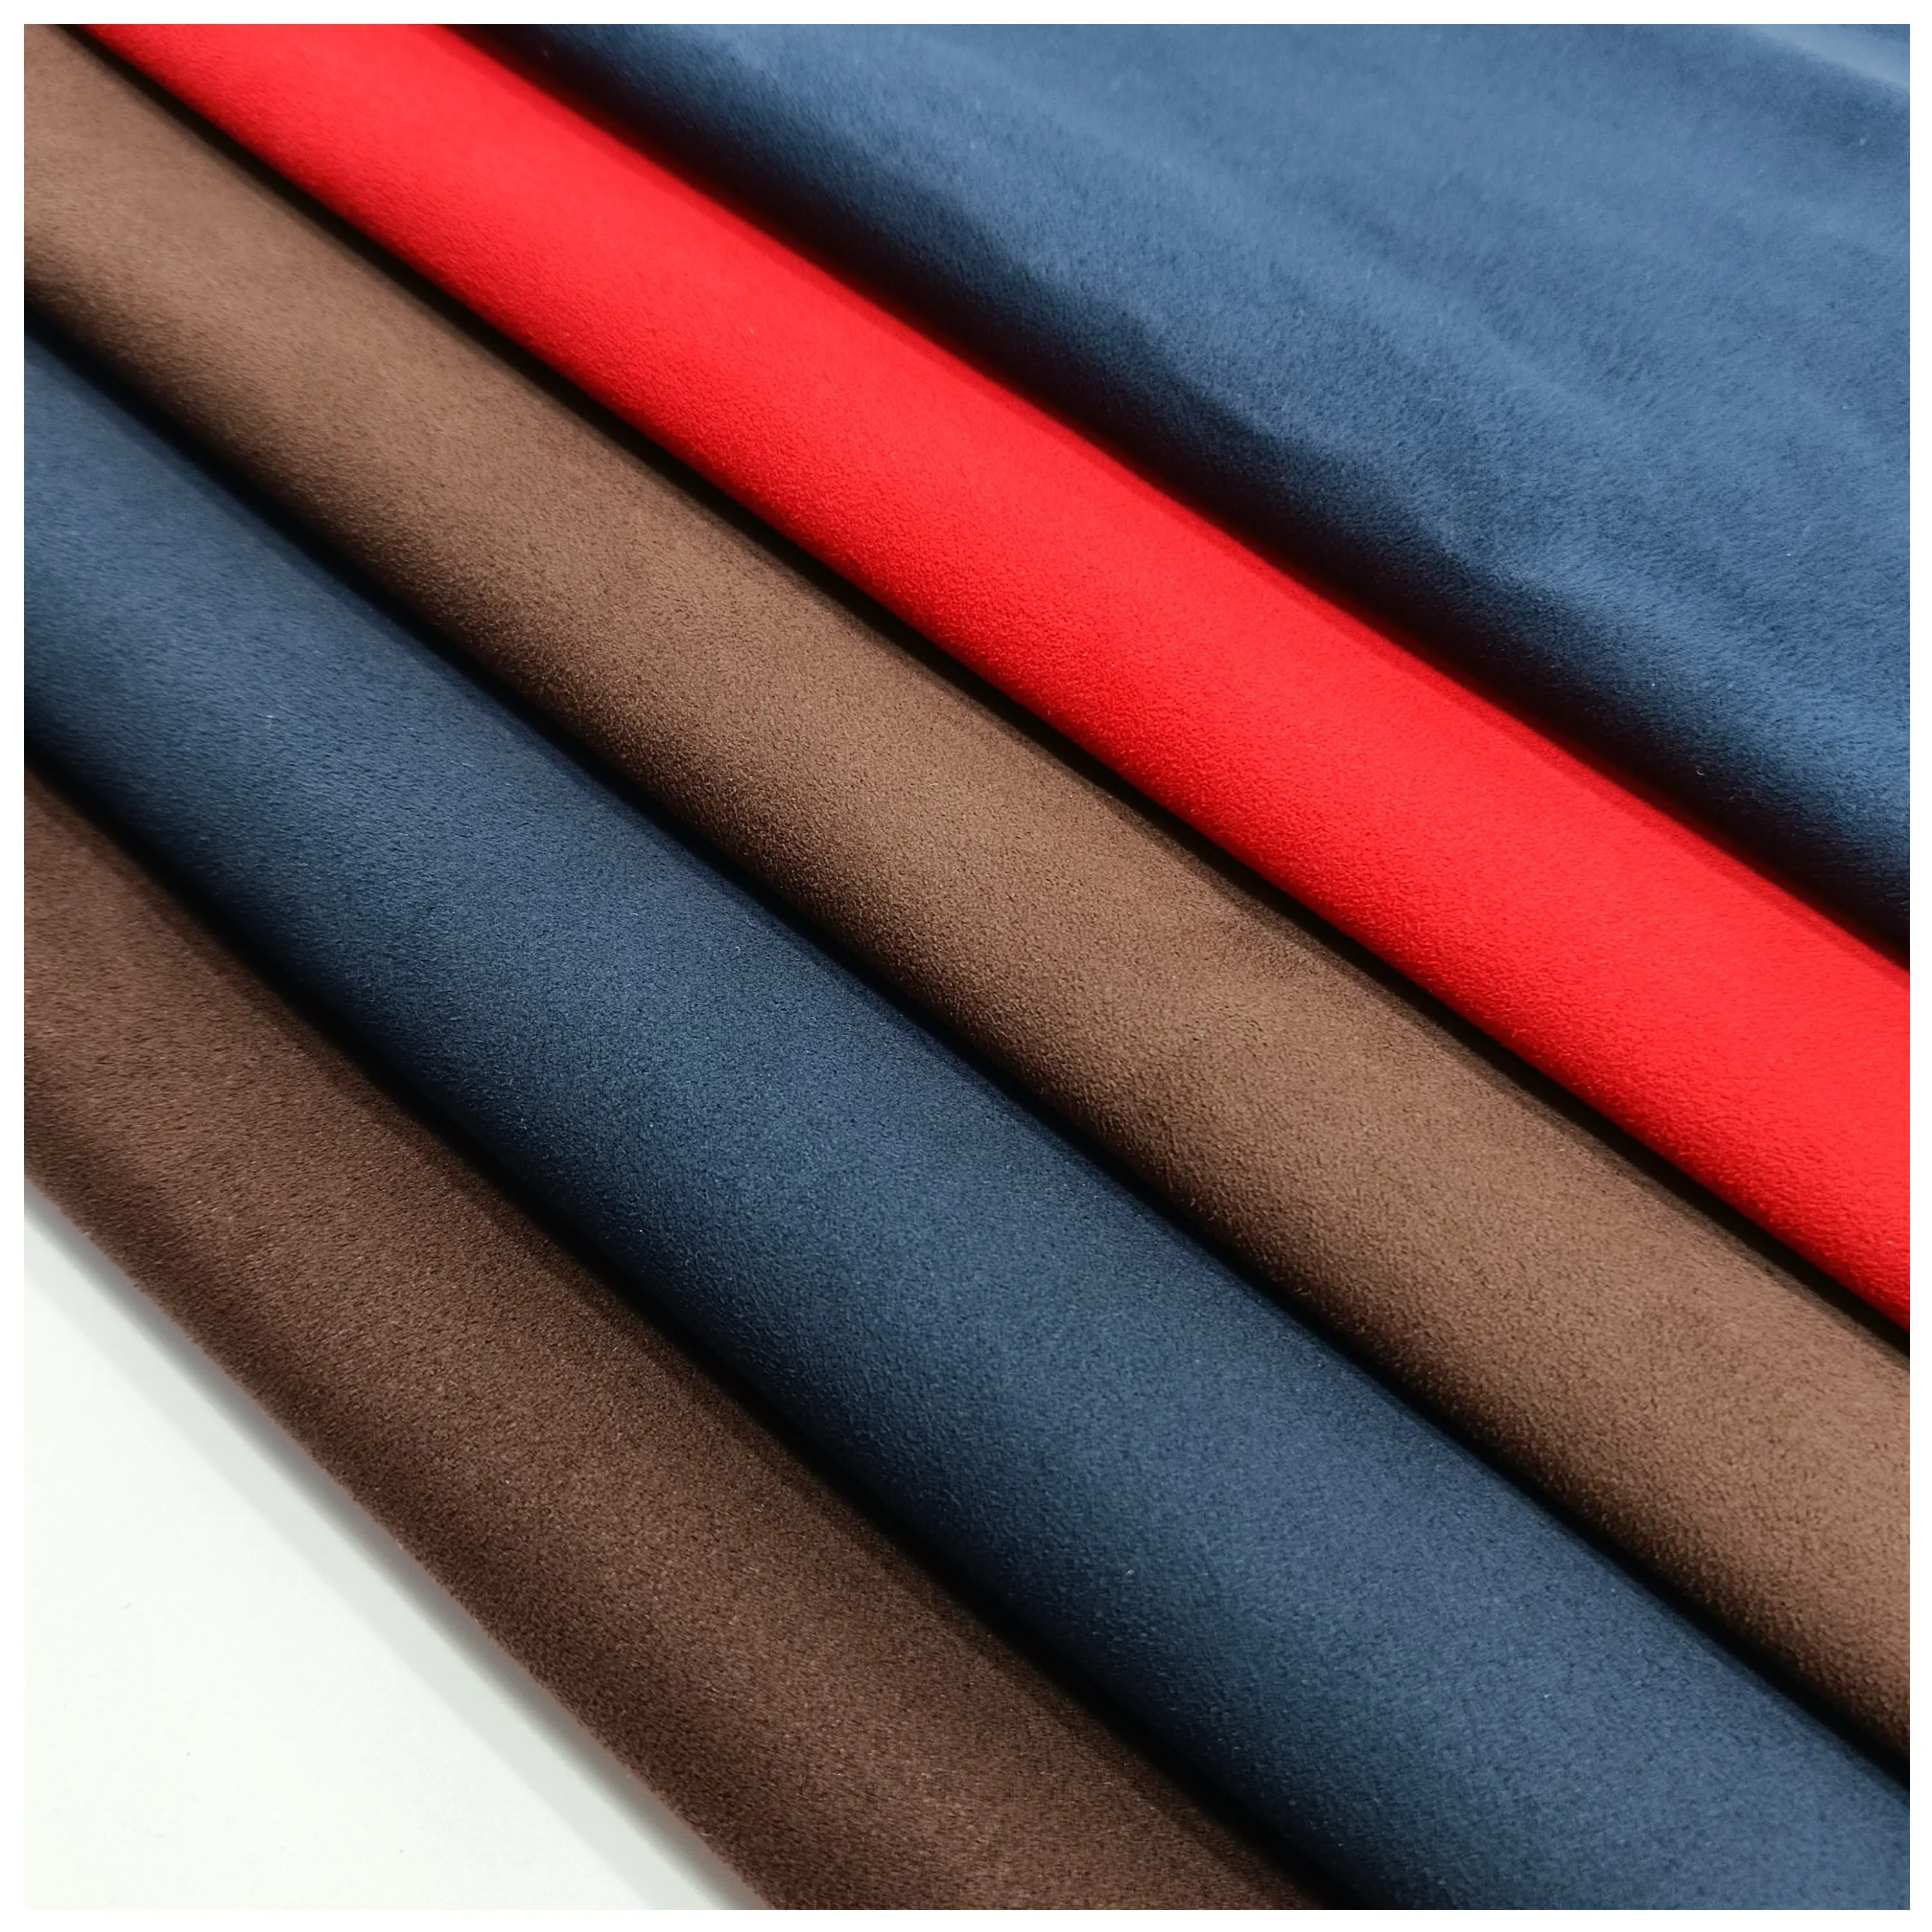 Nova moda impermeável camurça couro superfície semelhante alcantra tecido vinil estofos tecido para estofos carro/sofá fazendo